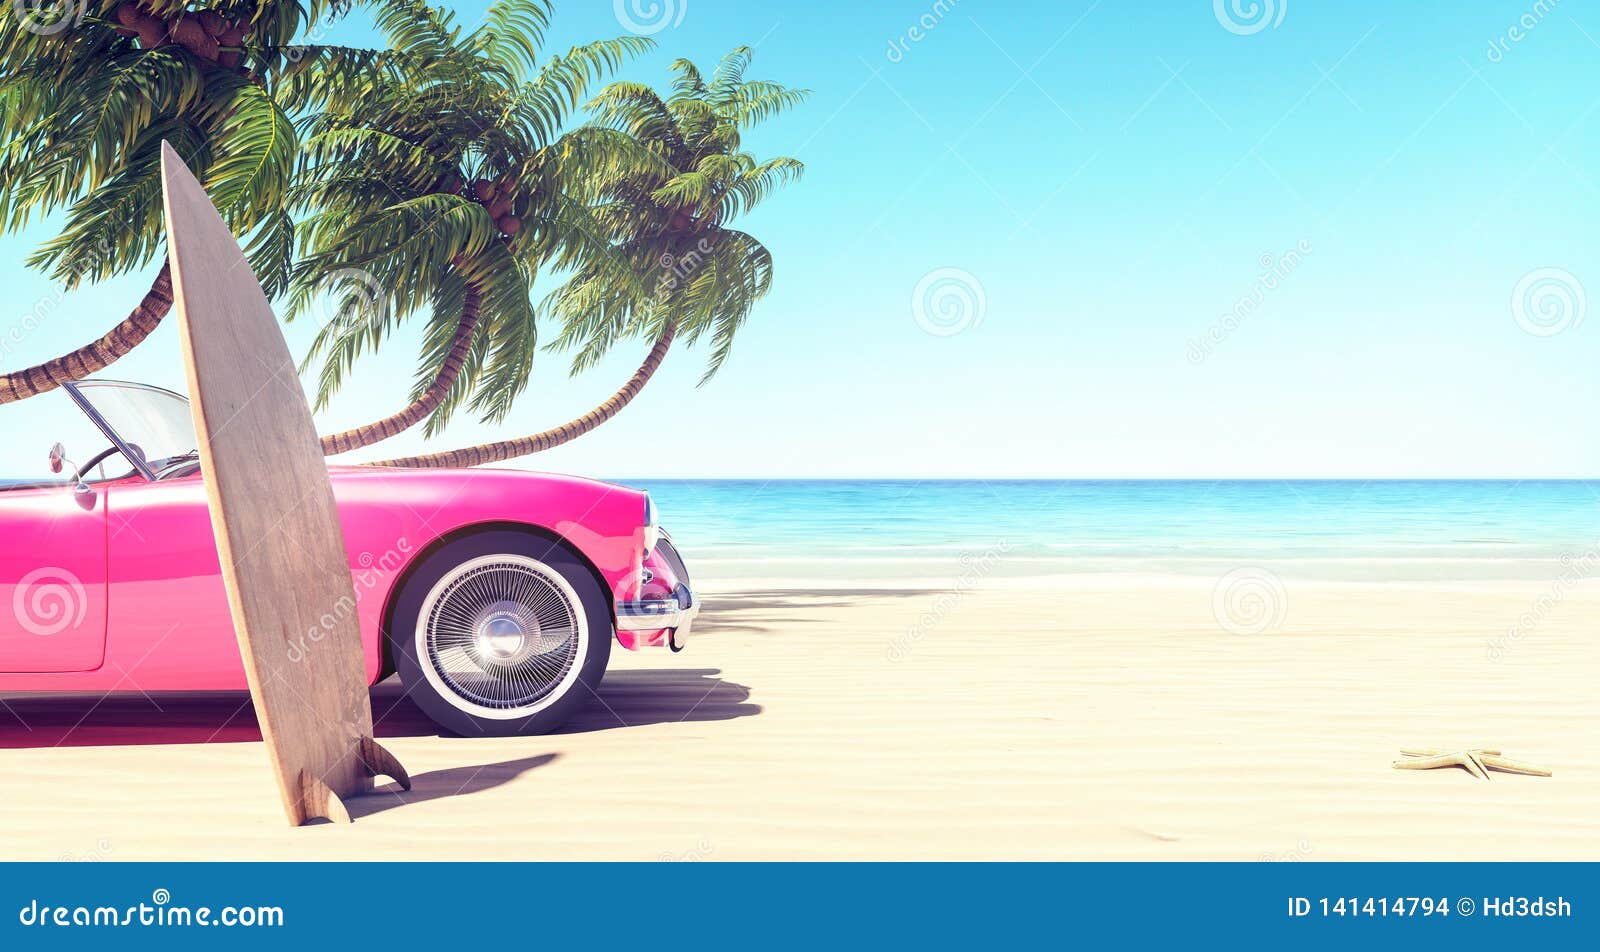 Đừng bỏ lỡ bức ảnh này! Một chiếc xe hơi màu hồng đang đỗ trên bãi biển, phía trước là những cây dừa thanh mát, cảnh tượng này rất mang tính mùa hè và đầy năng lượng. Hãy thưởng thức bức tranh này làm hình nền trong khi tắt trí nghỉ ngơi mọi thứ đang xung quanh.